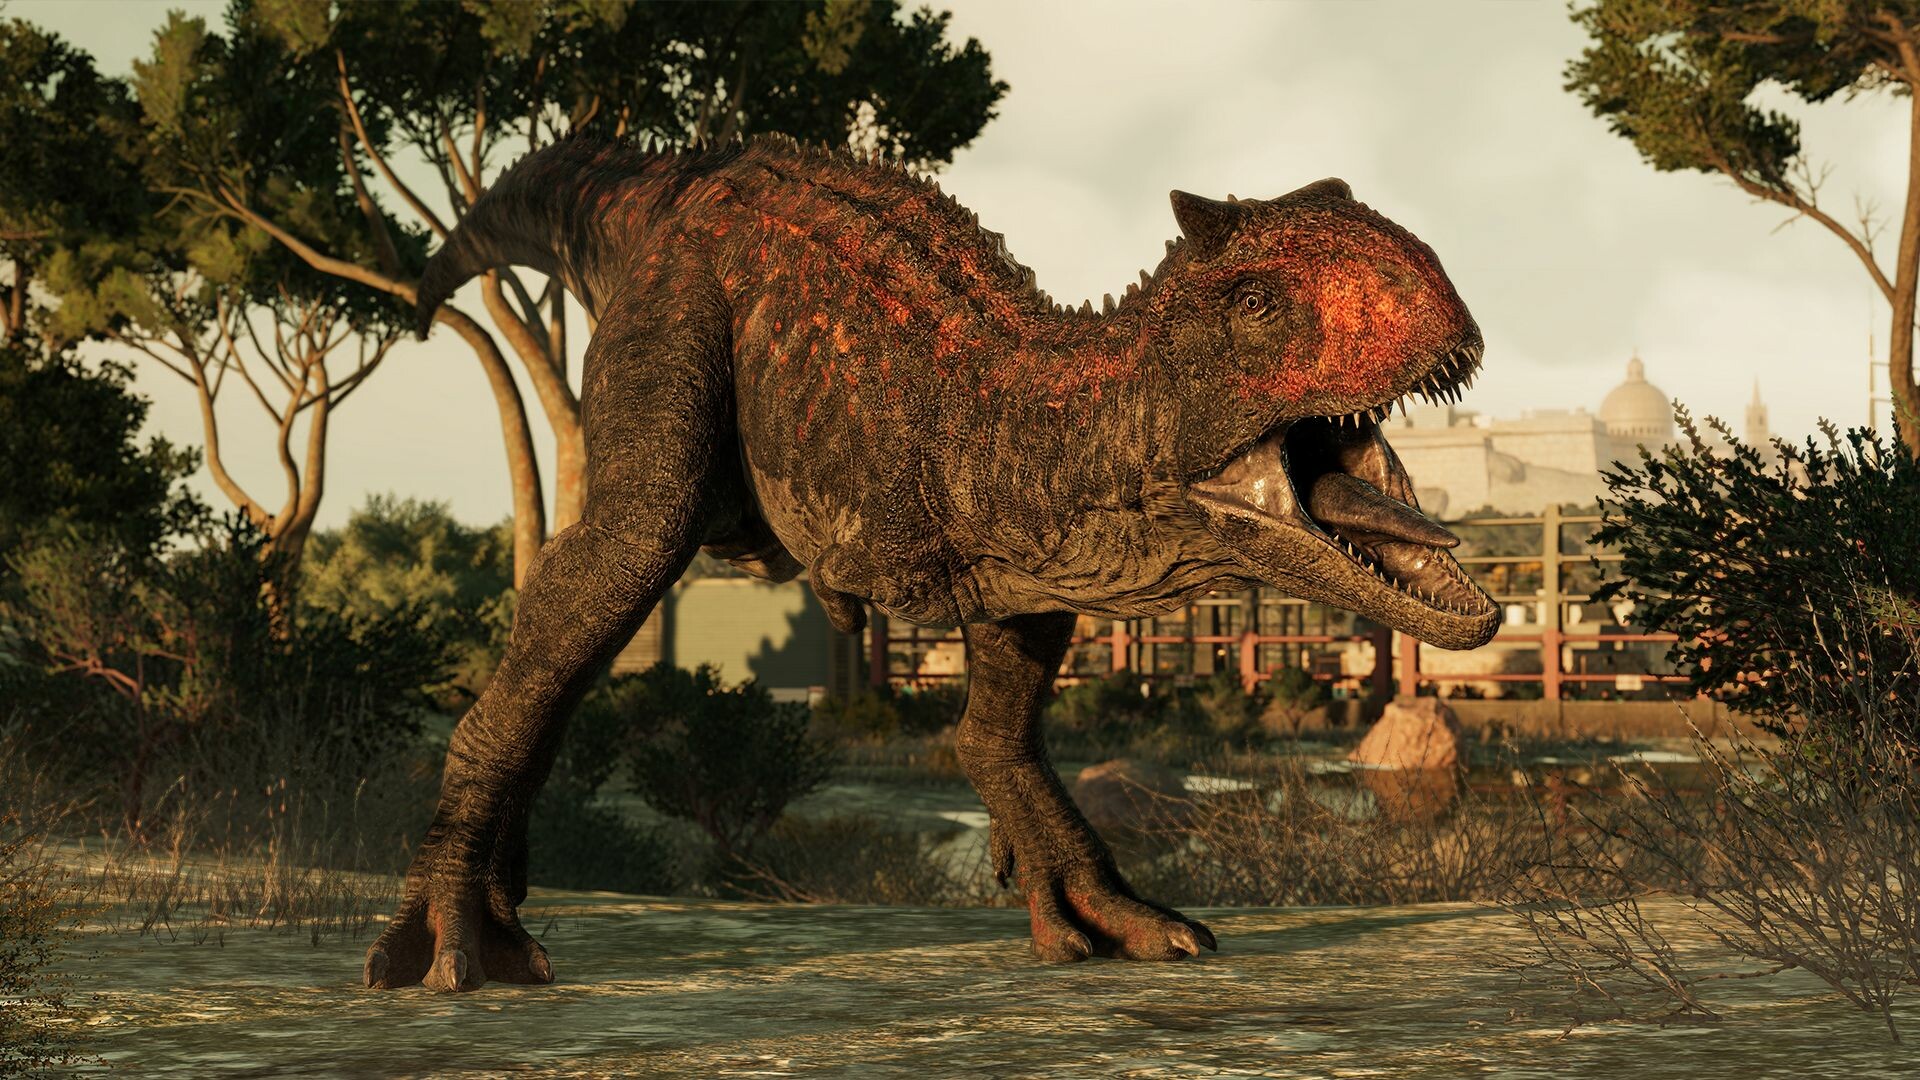 Jurassic World Evolution 2 - Dominion Malta Expansion DLC Steam Altergift